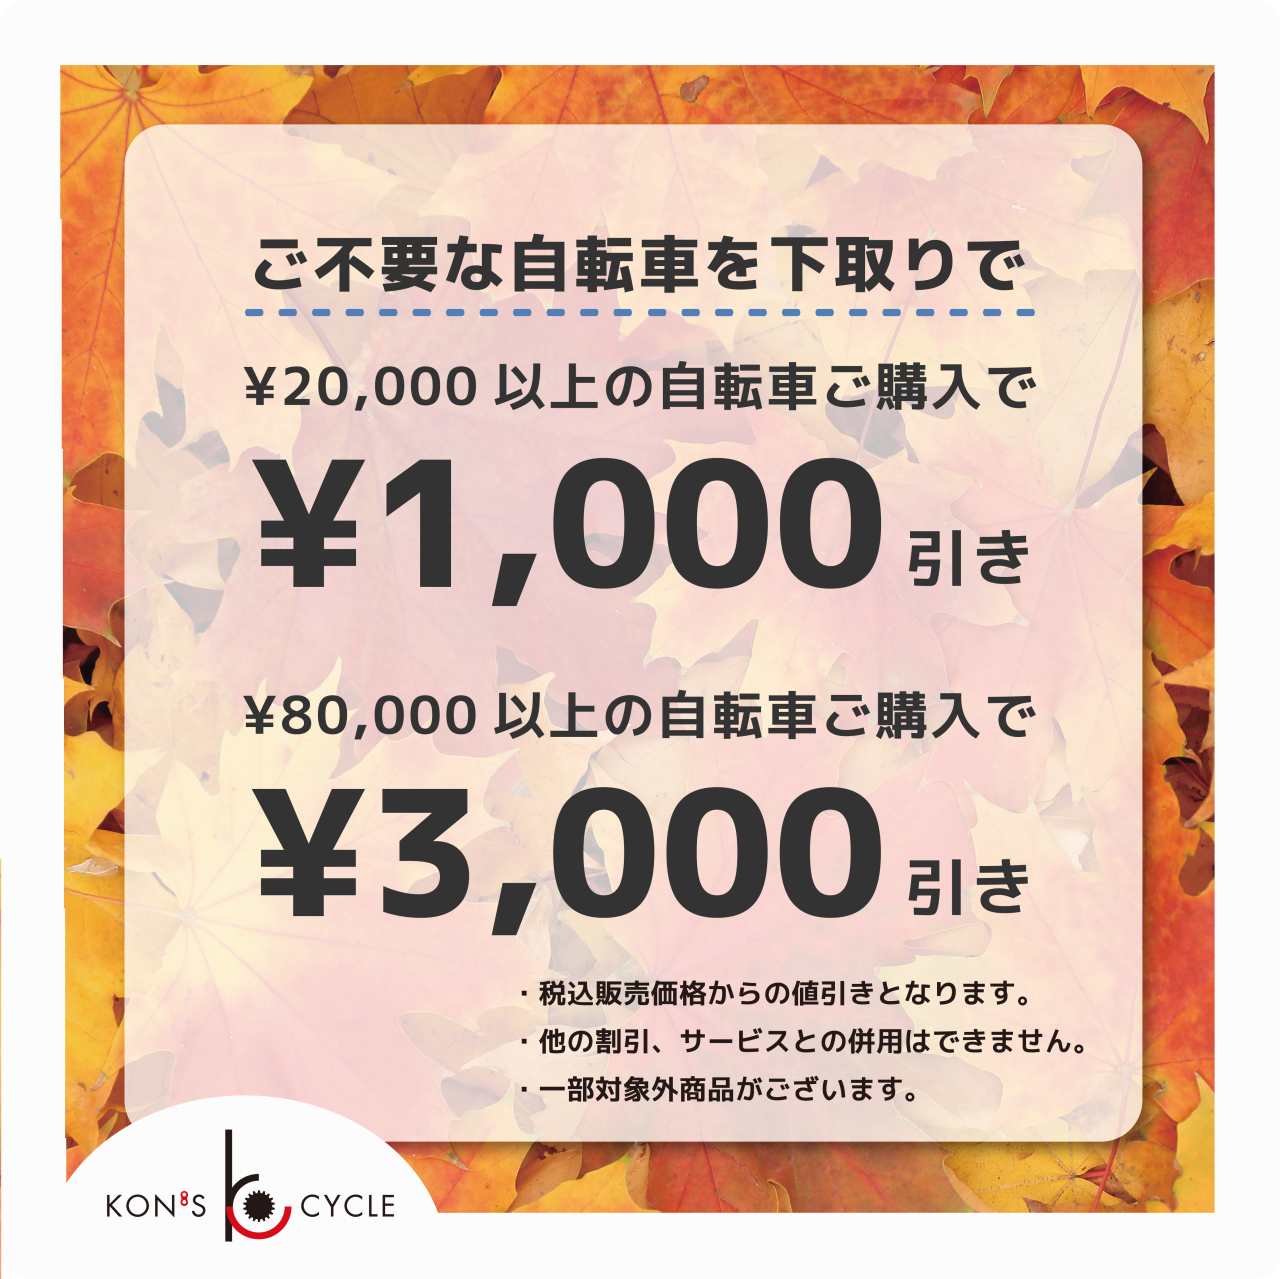 乗り換えキャンペーン開催のお知らせ | News&Information | コンズサイクル｜KON'S CYCLE|京都の自転車ショップ